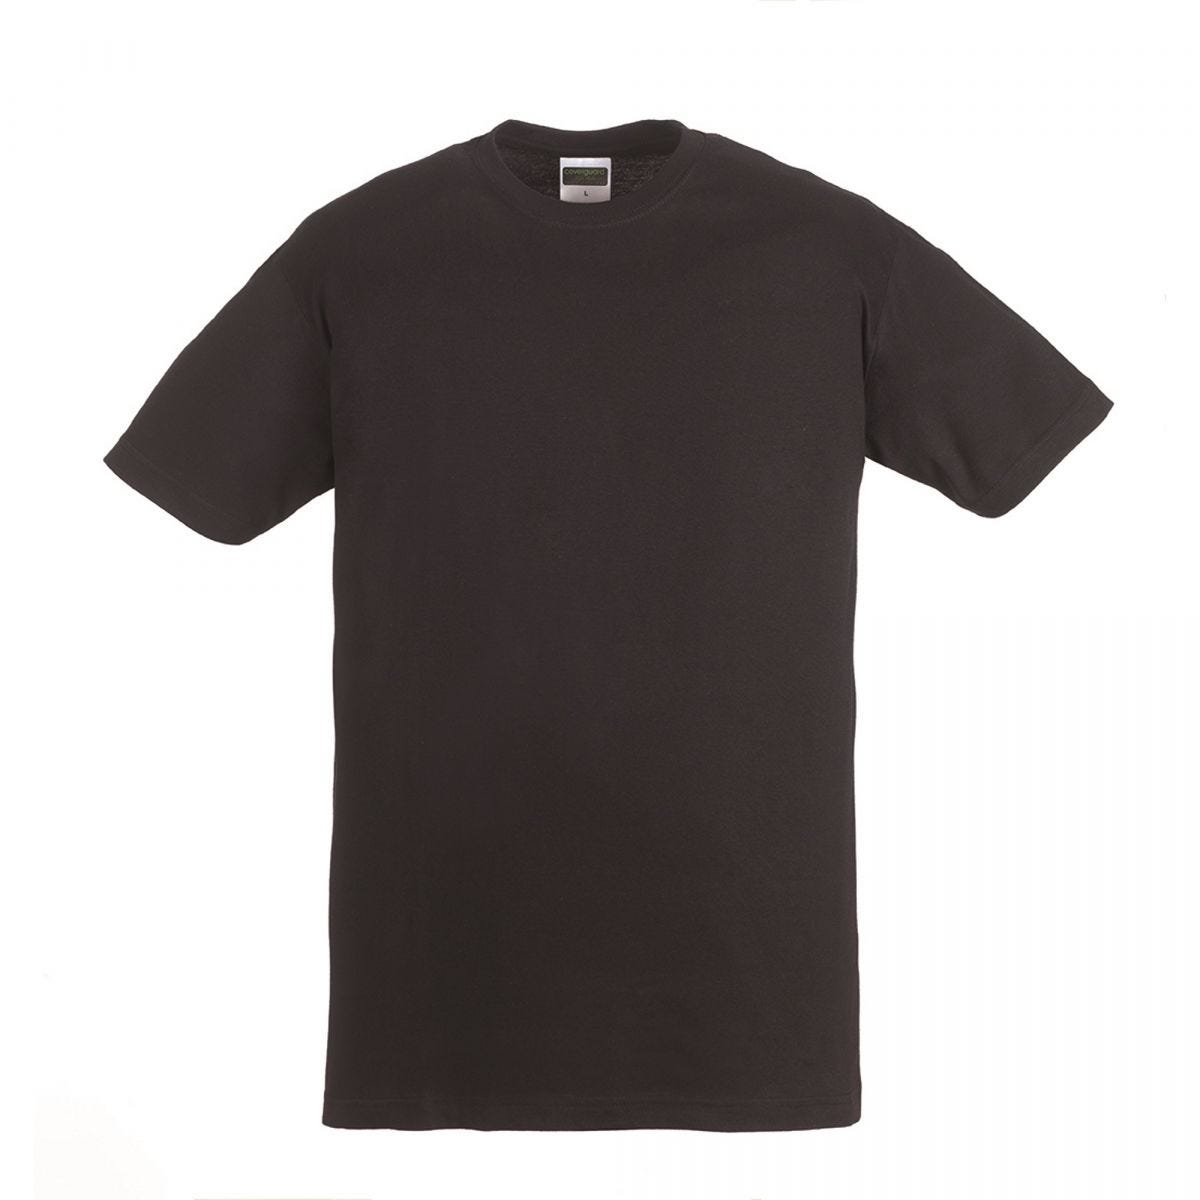 HIKE T-shirt MC noir, 100% coton, 190g/m² - COVERGUARD - Taille M 0